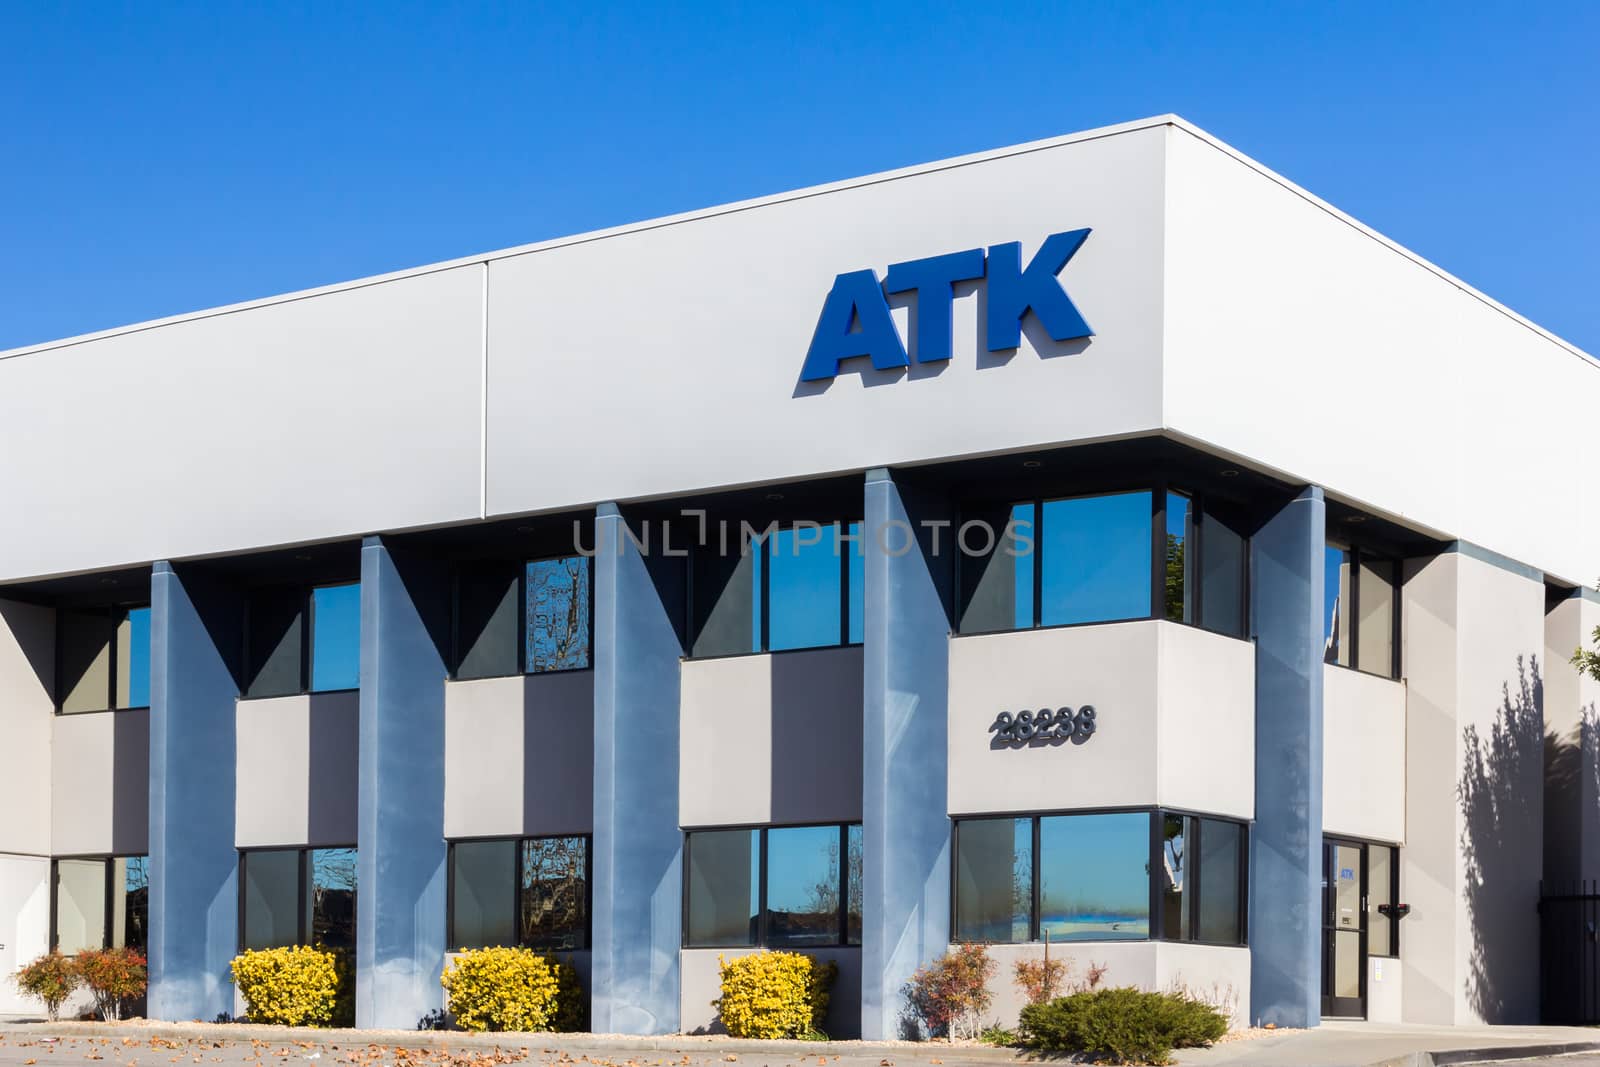 VALENCIA CA/USA - DECEMBER 26, 2015: ATK Services headquarters and logo.